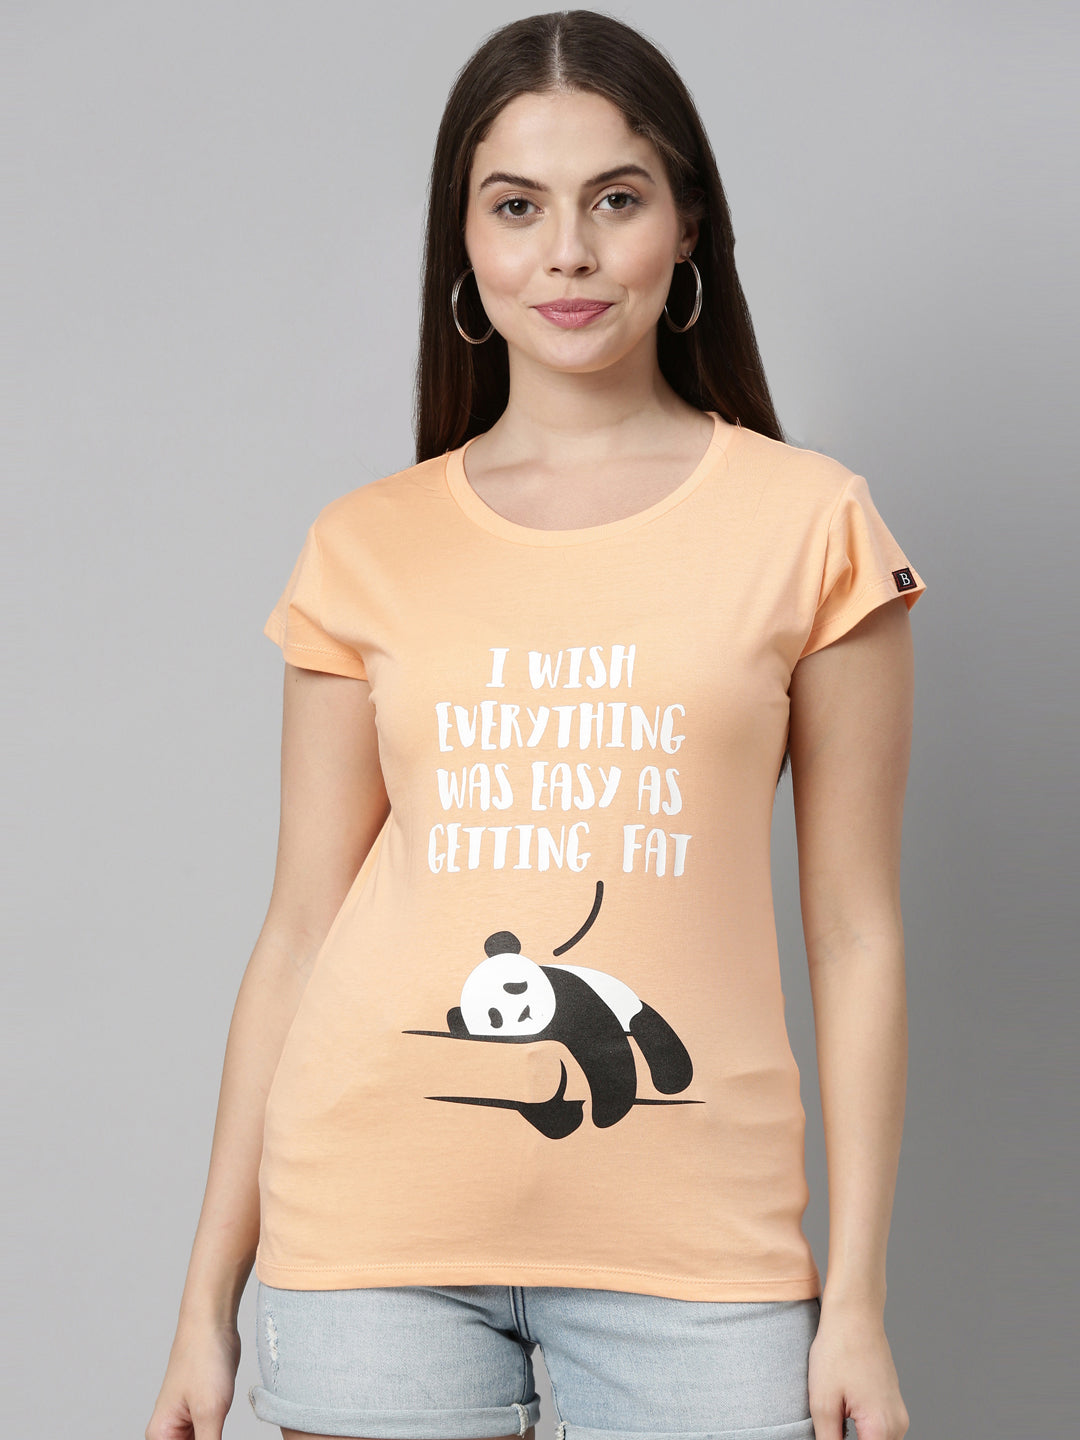 Getting Fat T-Shirt Women's Graphic Tees Bushirt   